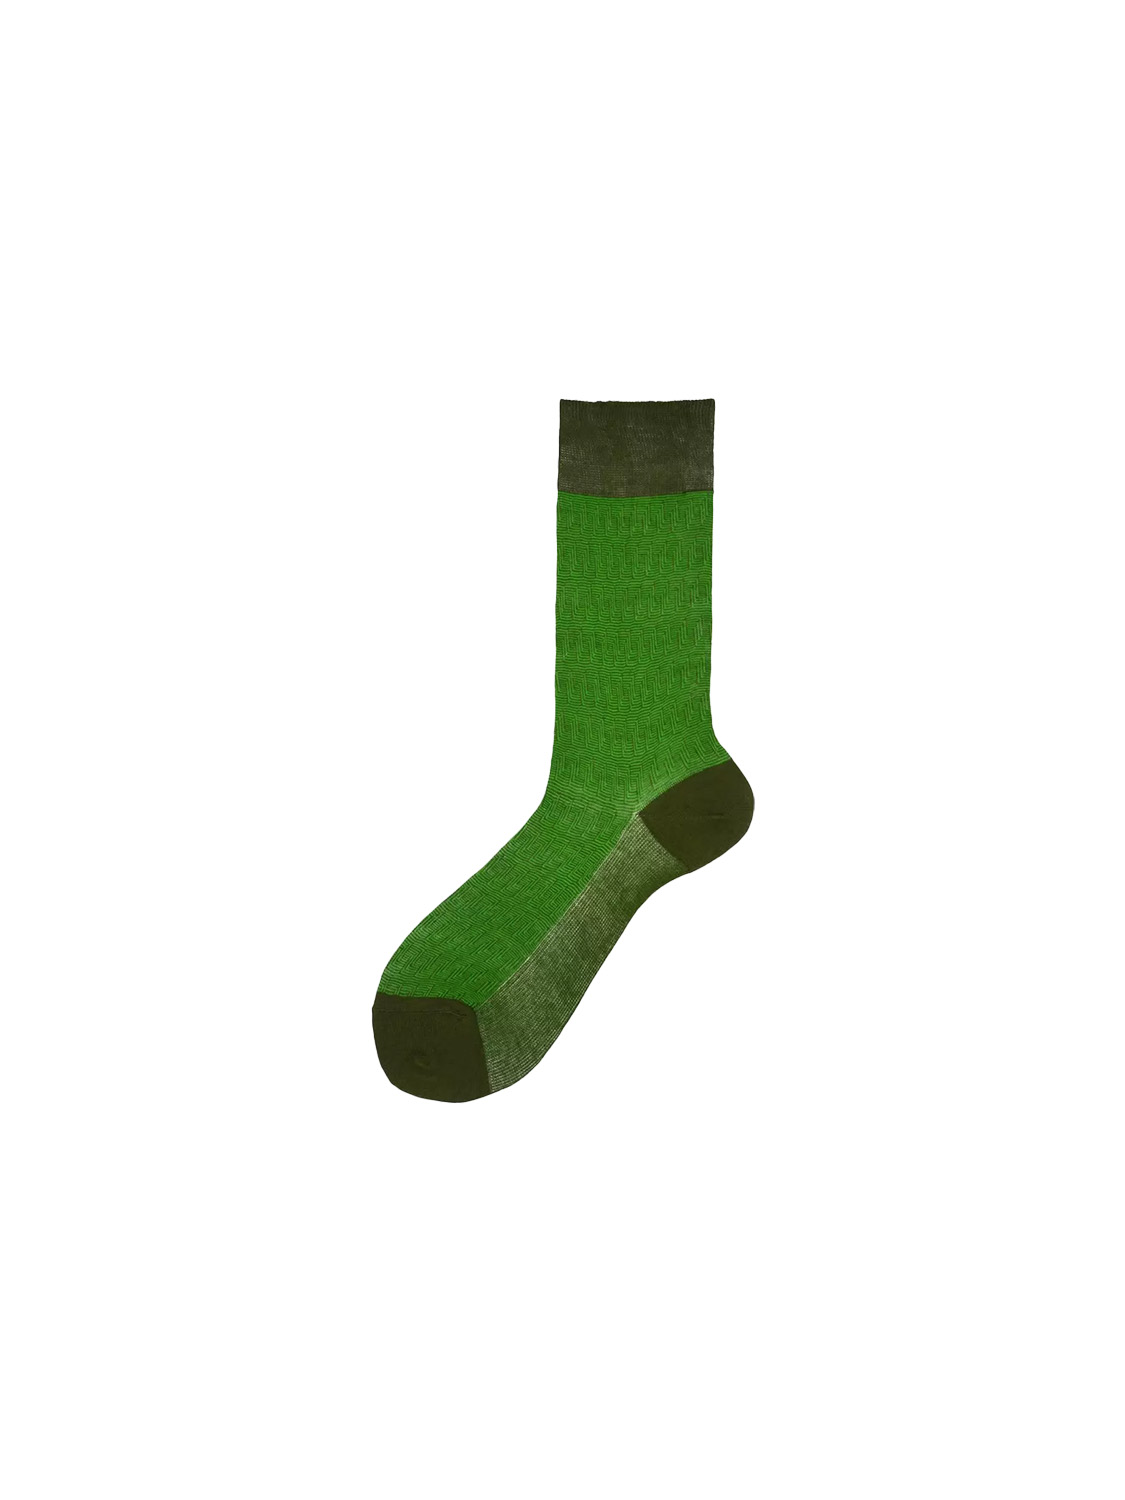 Alto Pyne – Kurze Baumwoll-Socken mit gestreiftem Muster   grün Taille unique